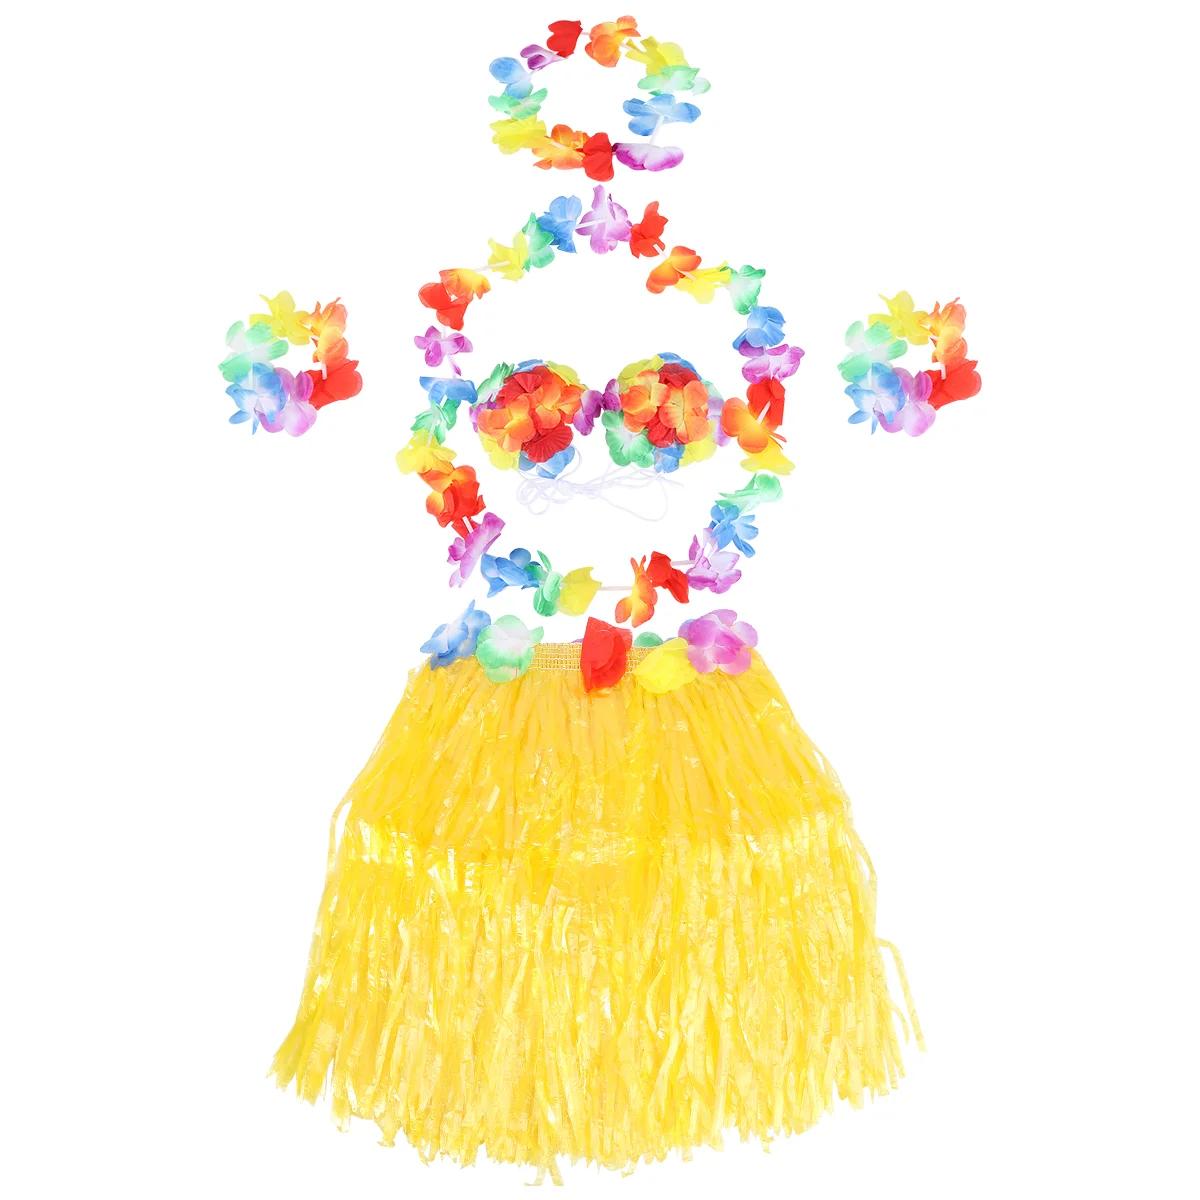 하와이안 훌라 댄스 소품, 홀리데이 스커트, 매력적인 하와이 장식 공연, 플라스틱 섬유 잔디, 재미있는 어린이